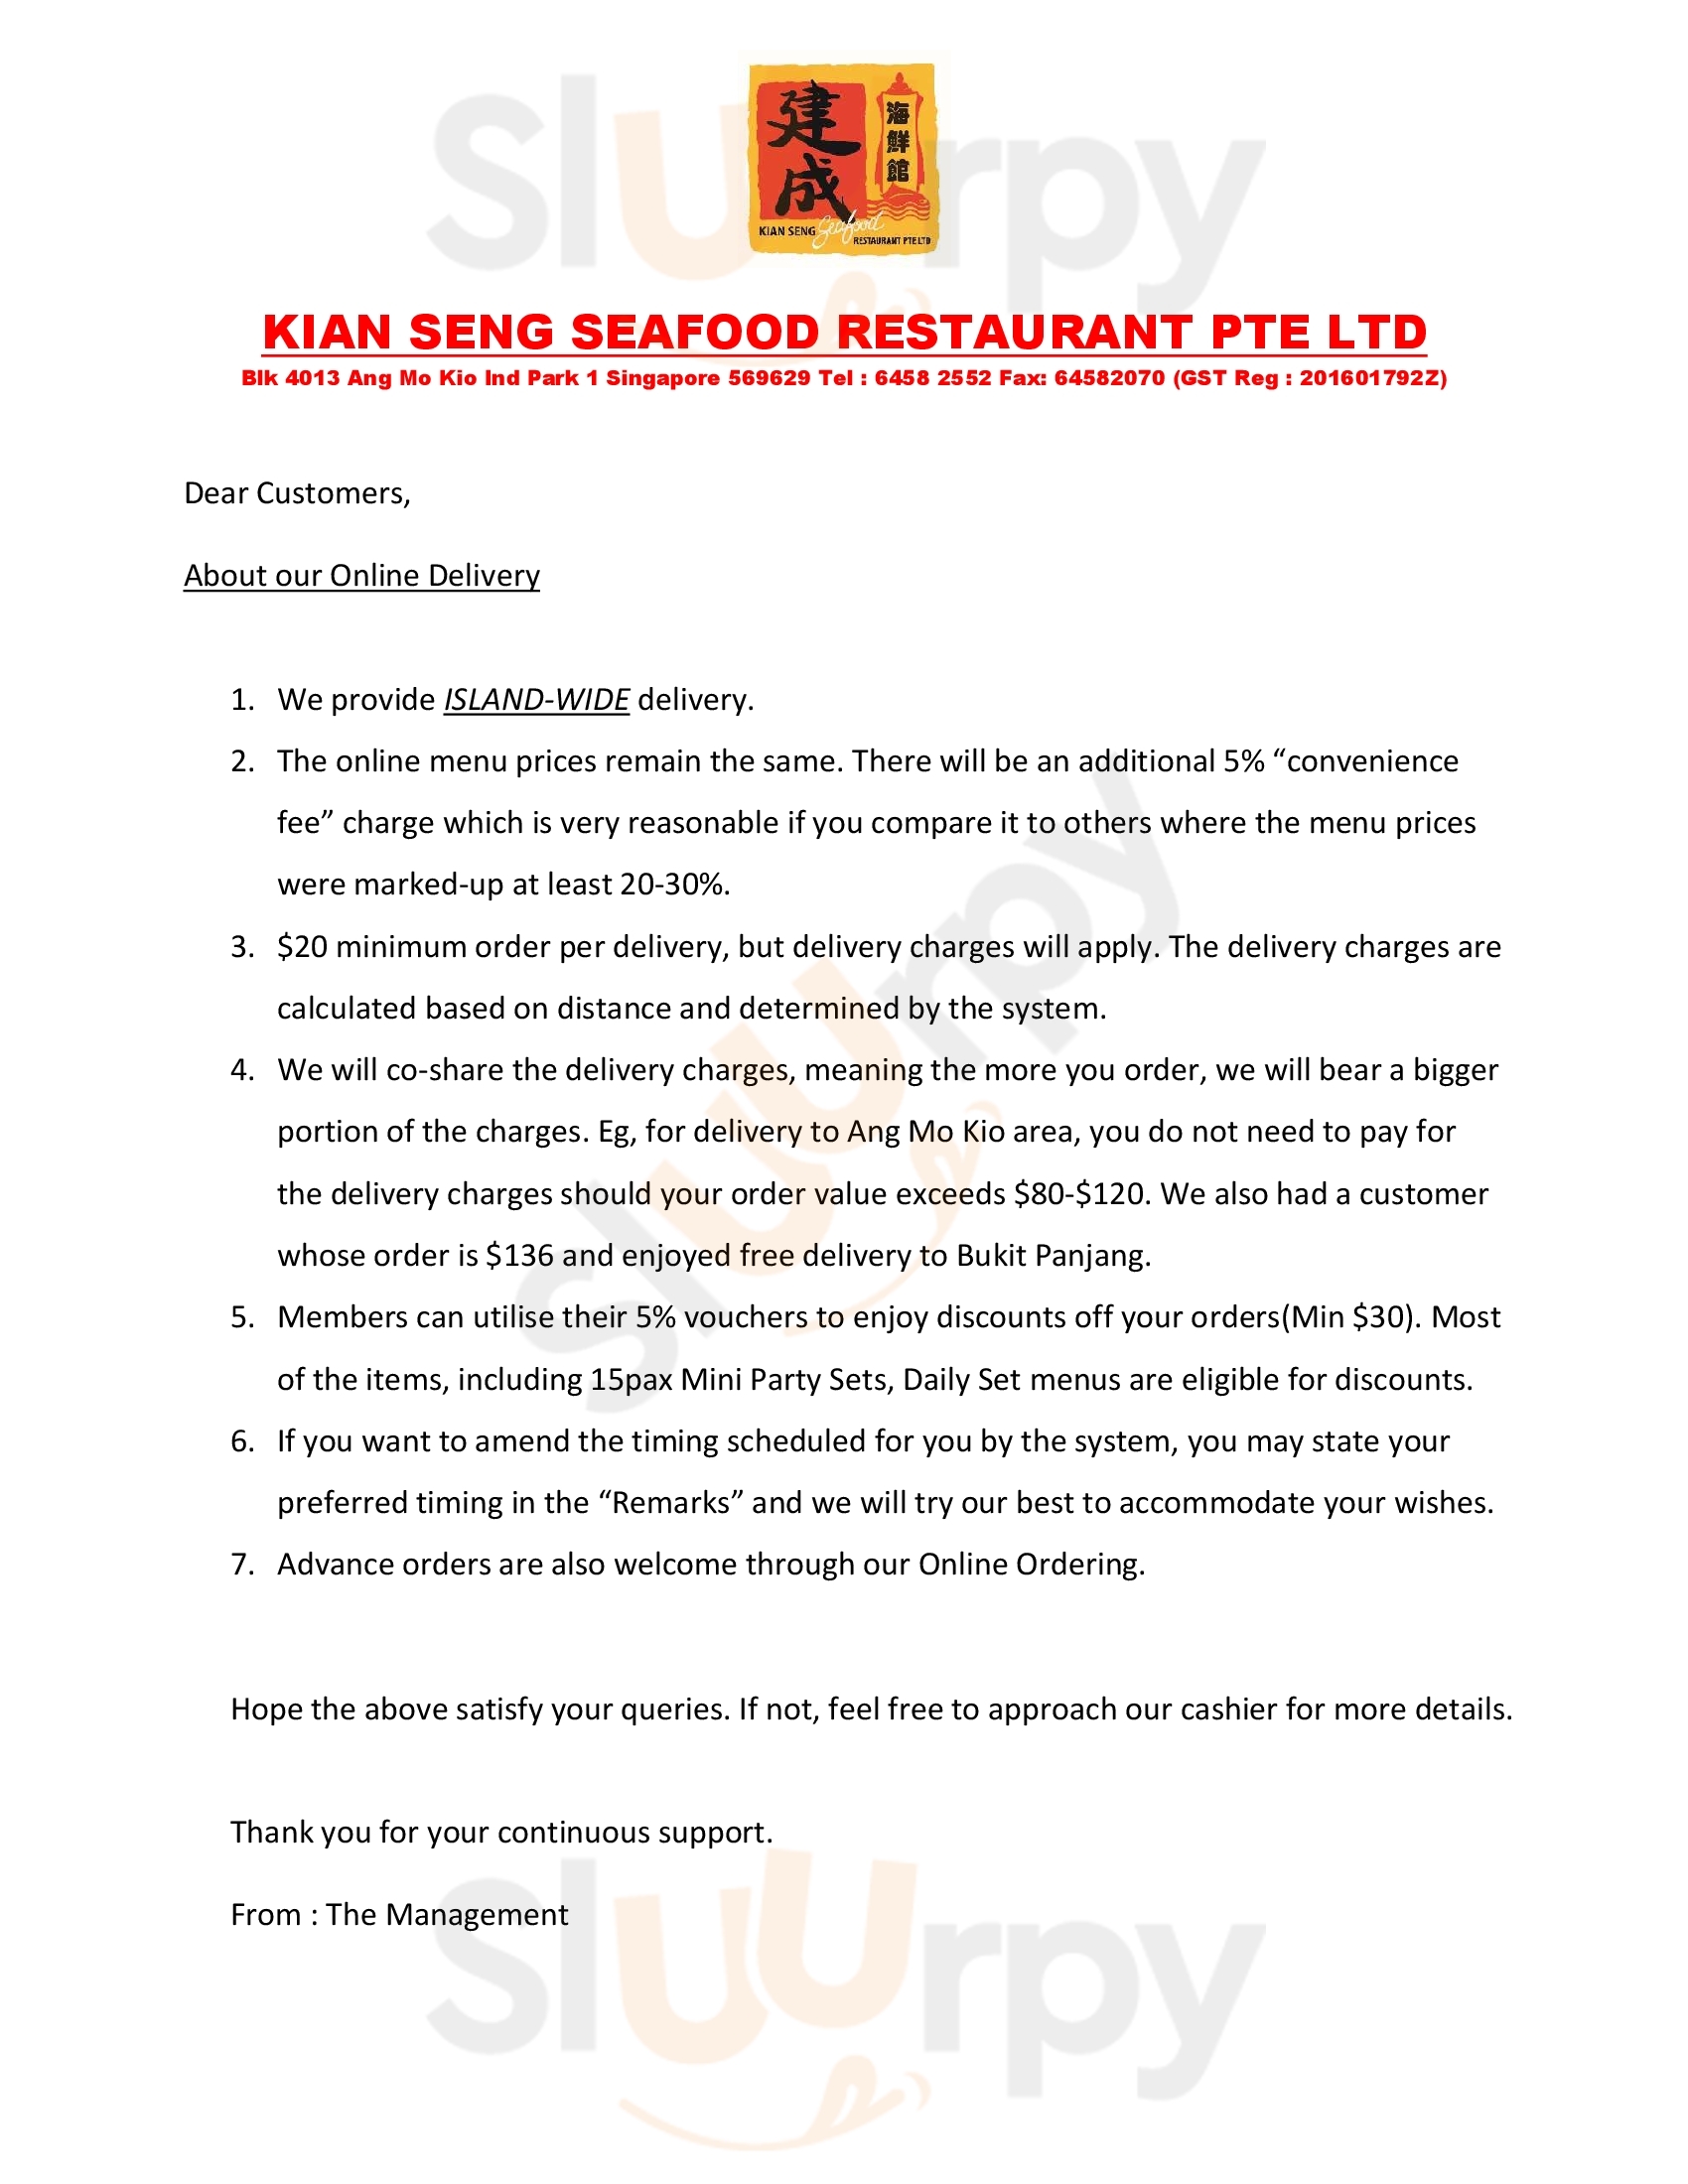 Kian Seng Seafood Restaurant Singapore Menu - 1